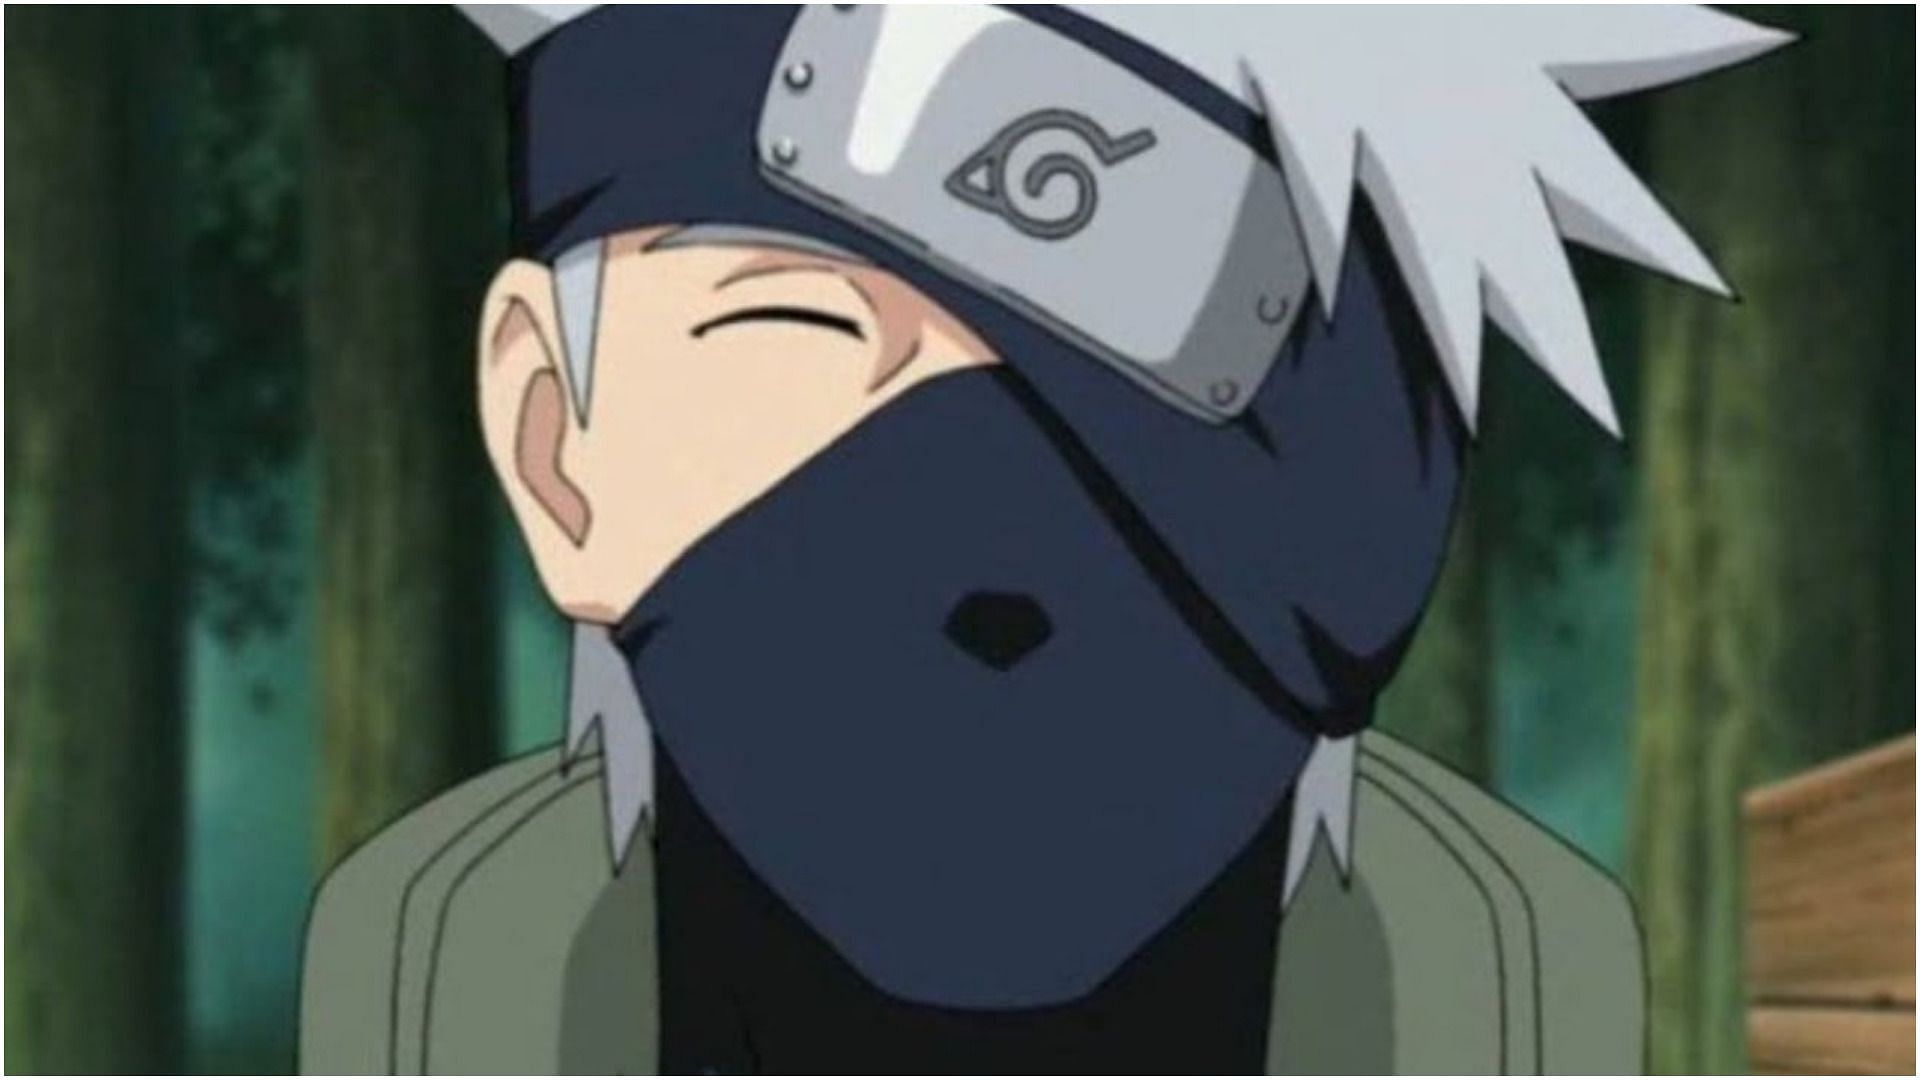 Kakashi Hatake as seen in the anime (Image credits: Masashi Kishimoto/ Shueisha, Viz Media, Naruto Shippuden)